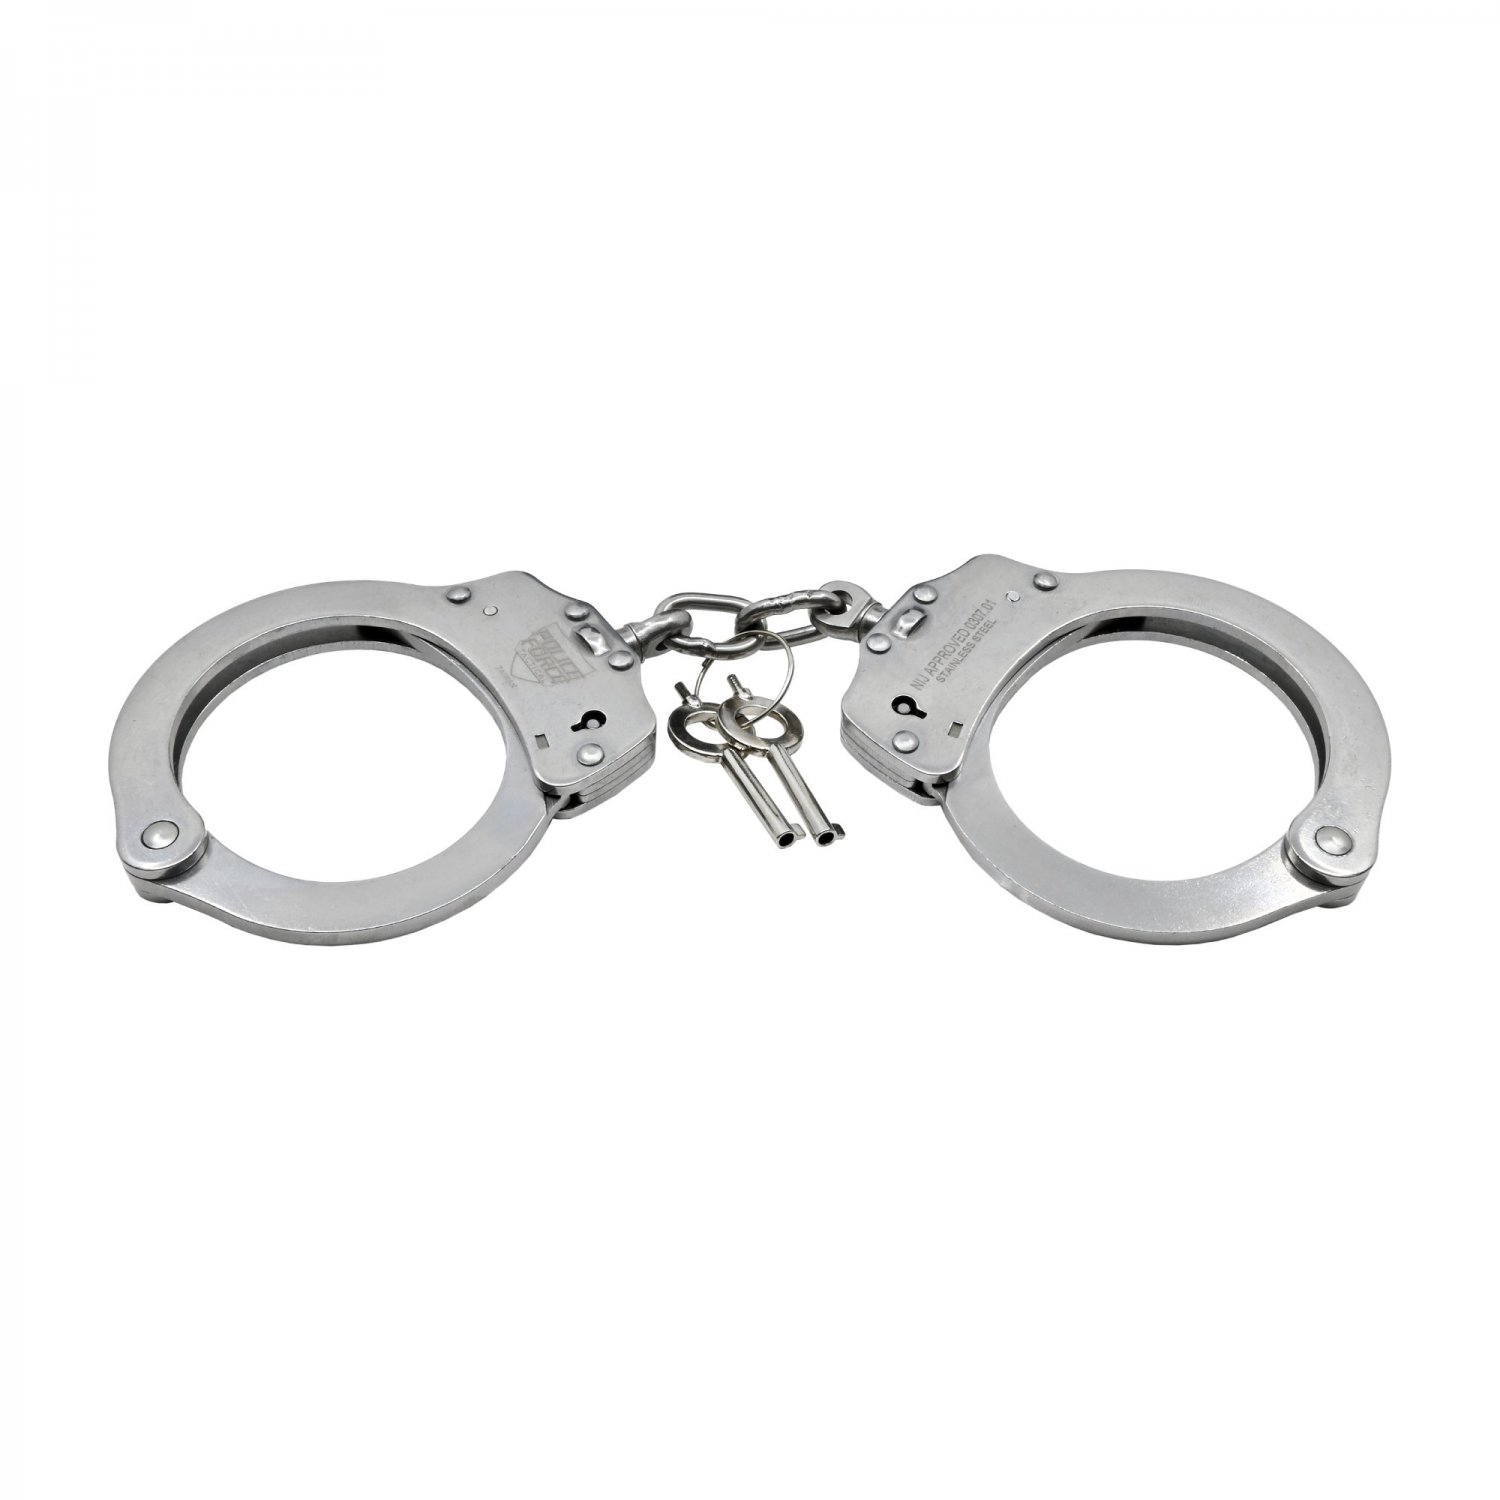 Stainless Steel NIJ Handcuffs